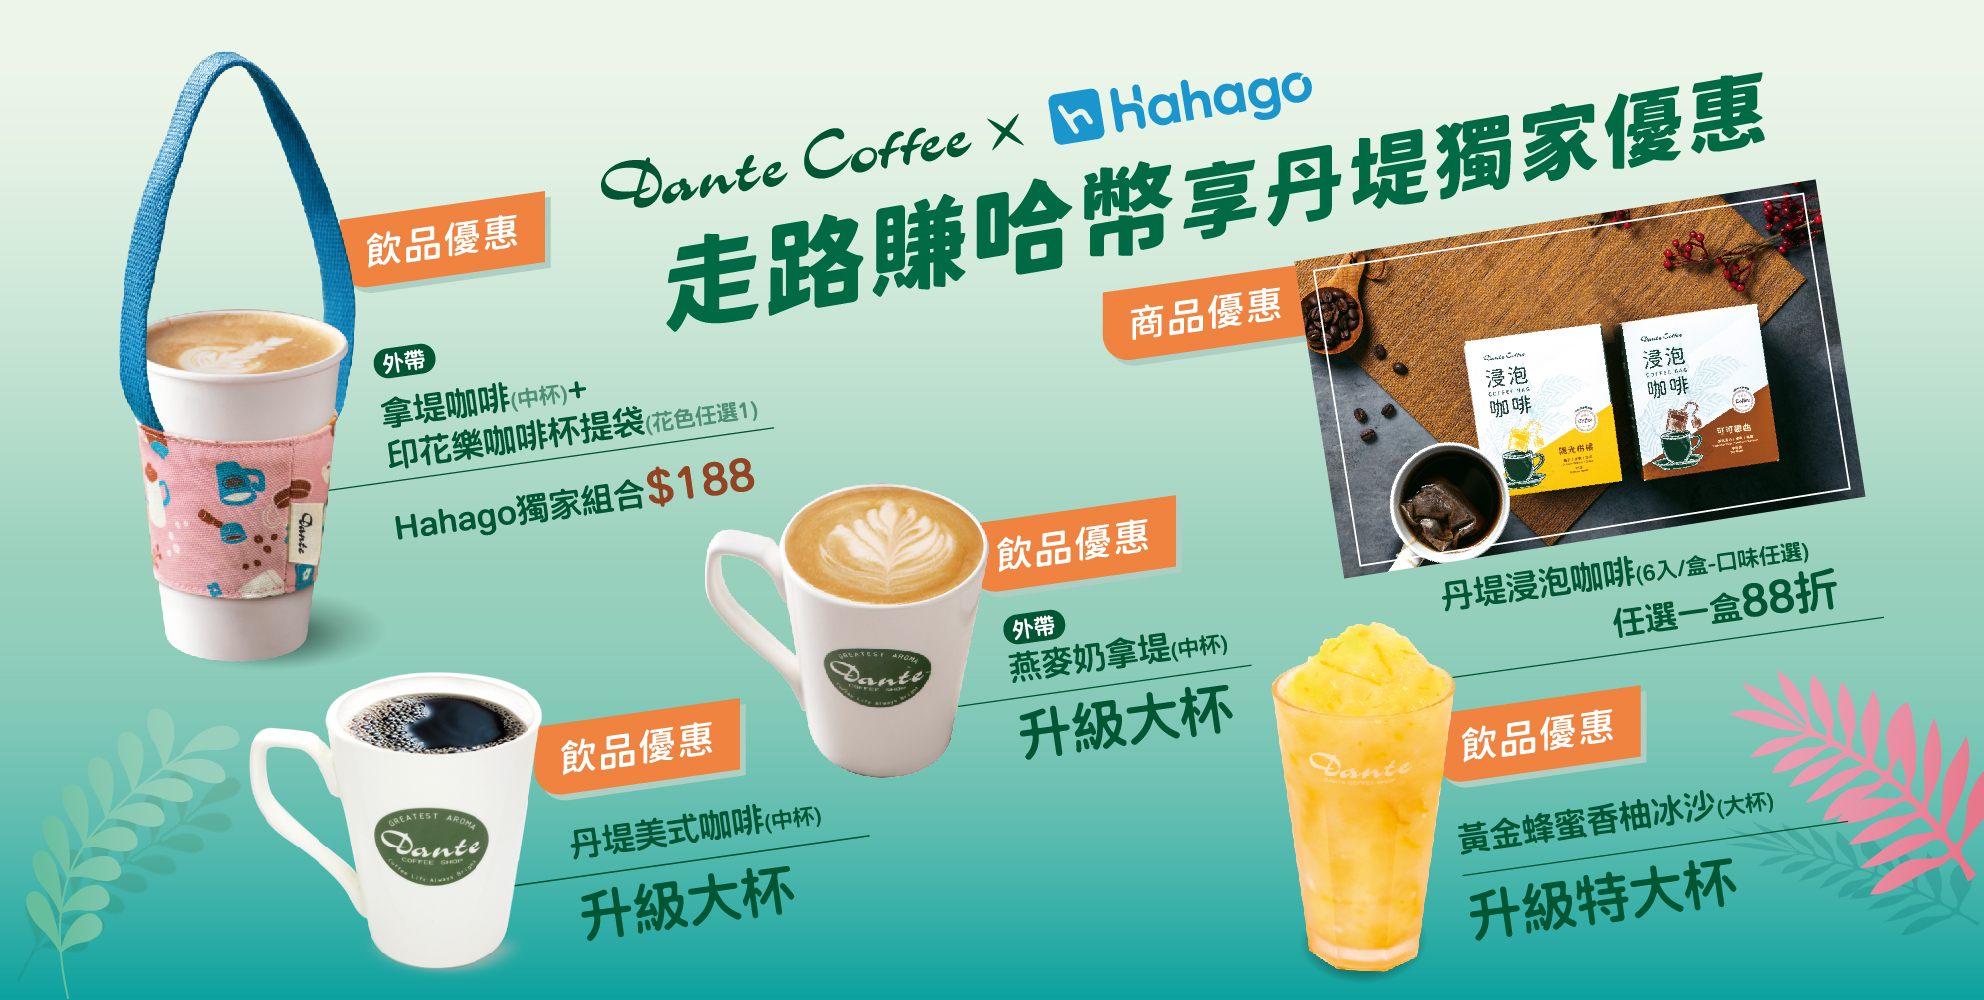 丹堤咖啡 X Hahago - 走路賺哈幣 享丹堤咖啡獨家優惠